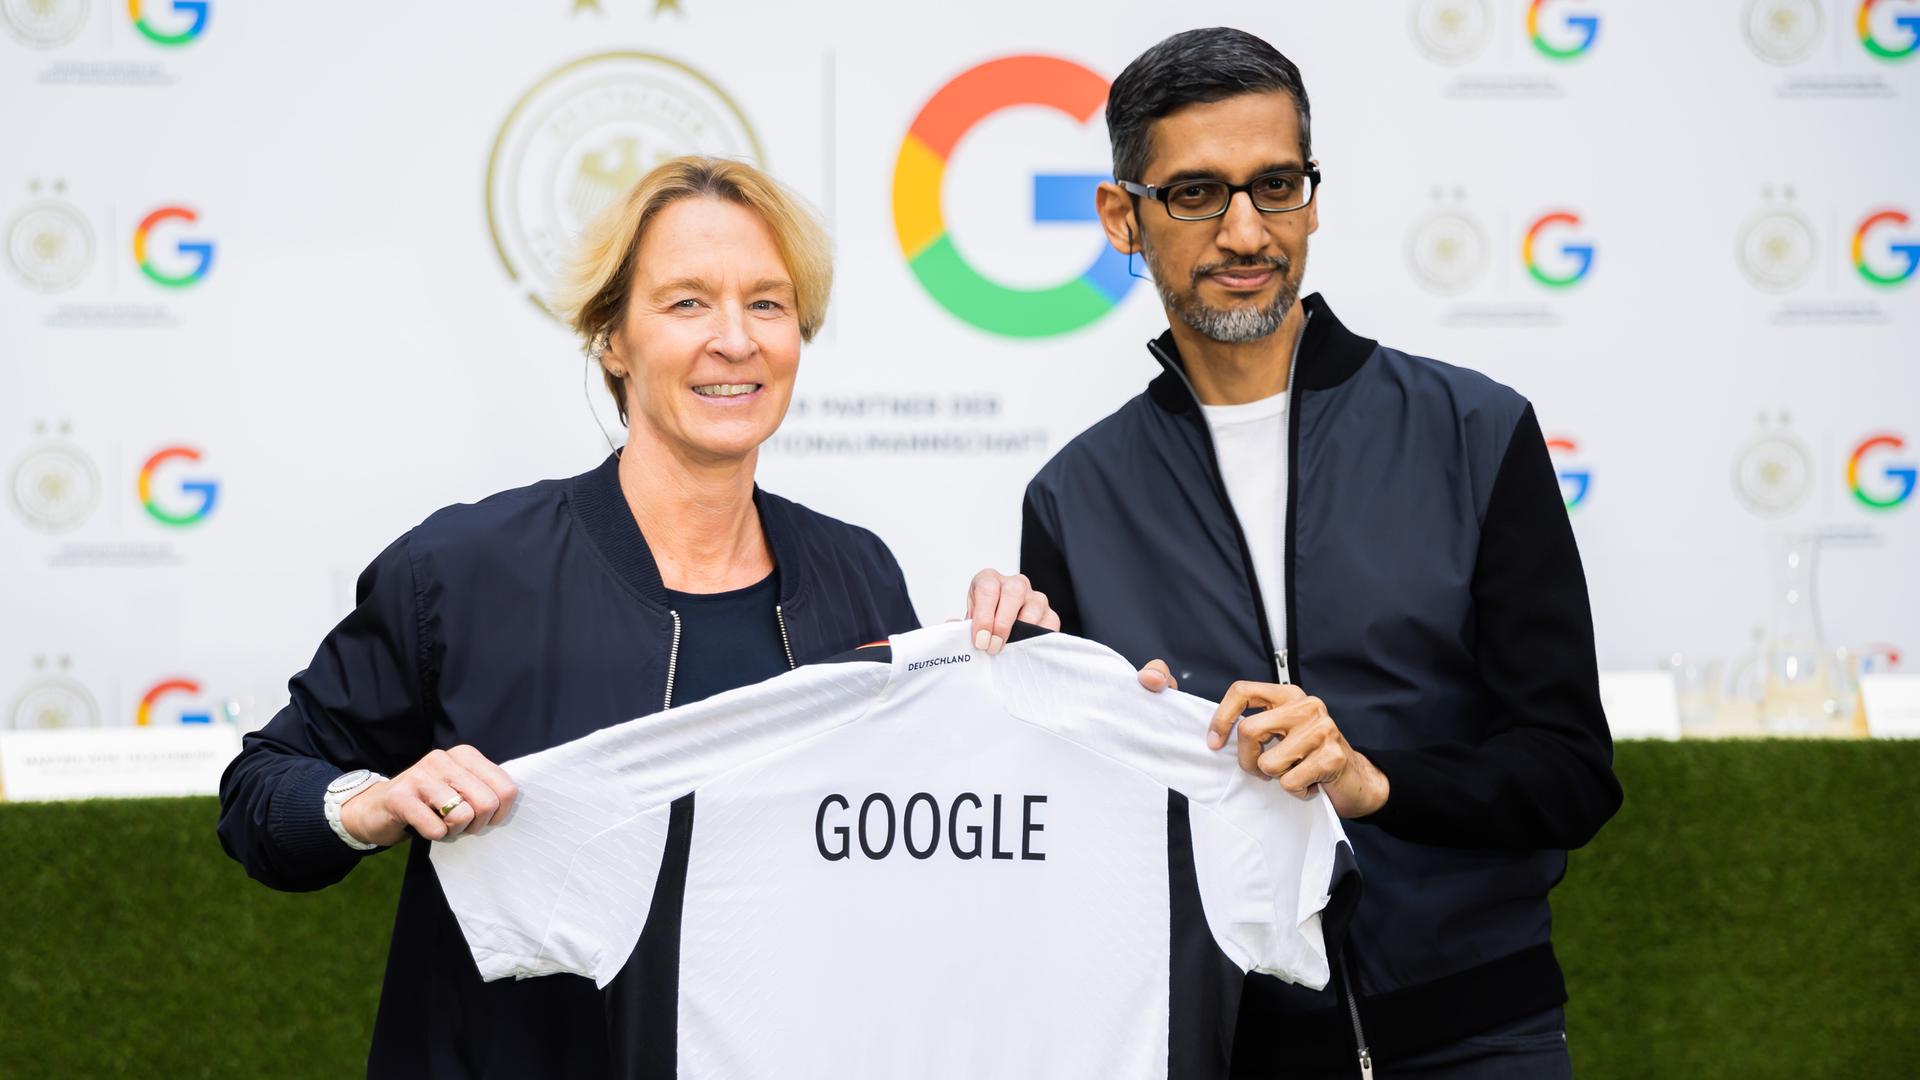 Bundestrainerin Martina Voss-Tecklenburg und Google-Chef Pichai halten gemeinsam ein Shirt mit der Aufschrift "Google" in den Kamera.